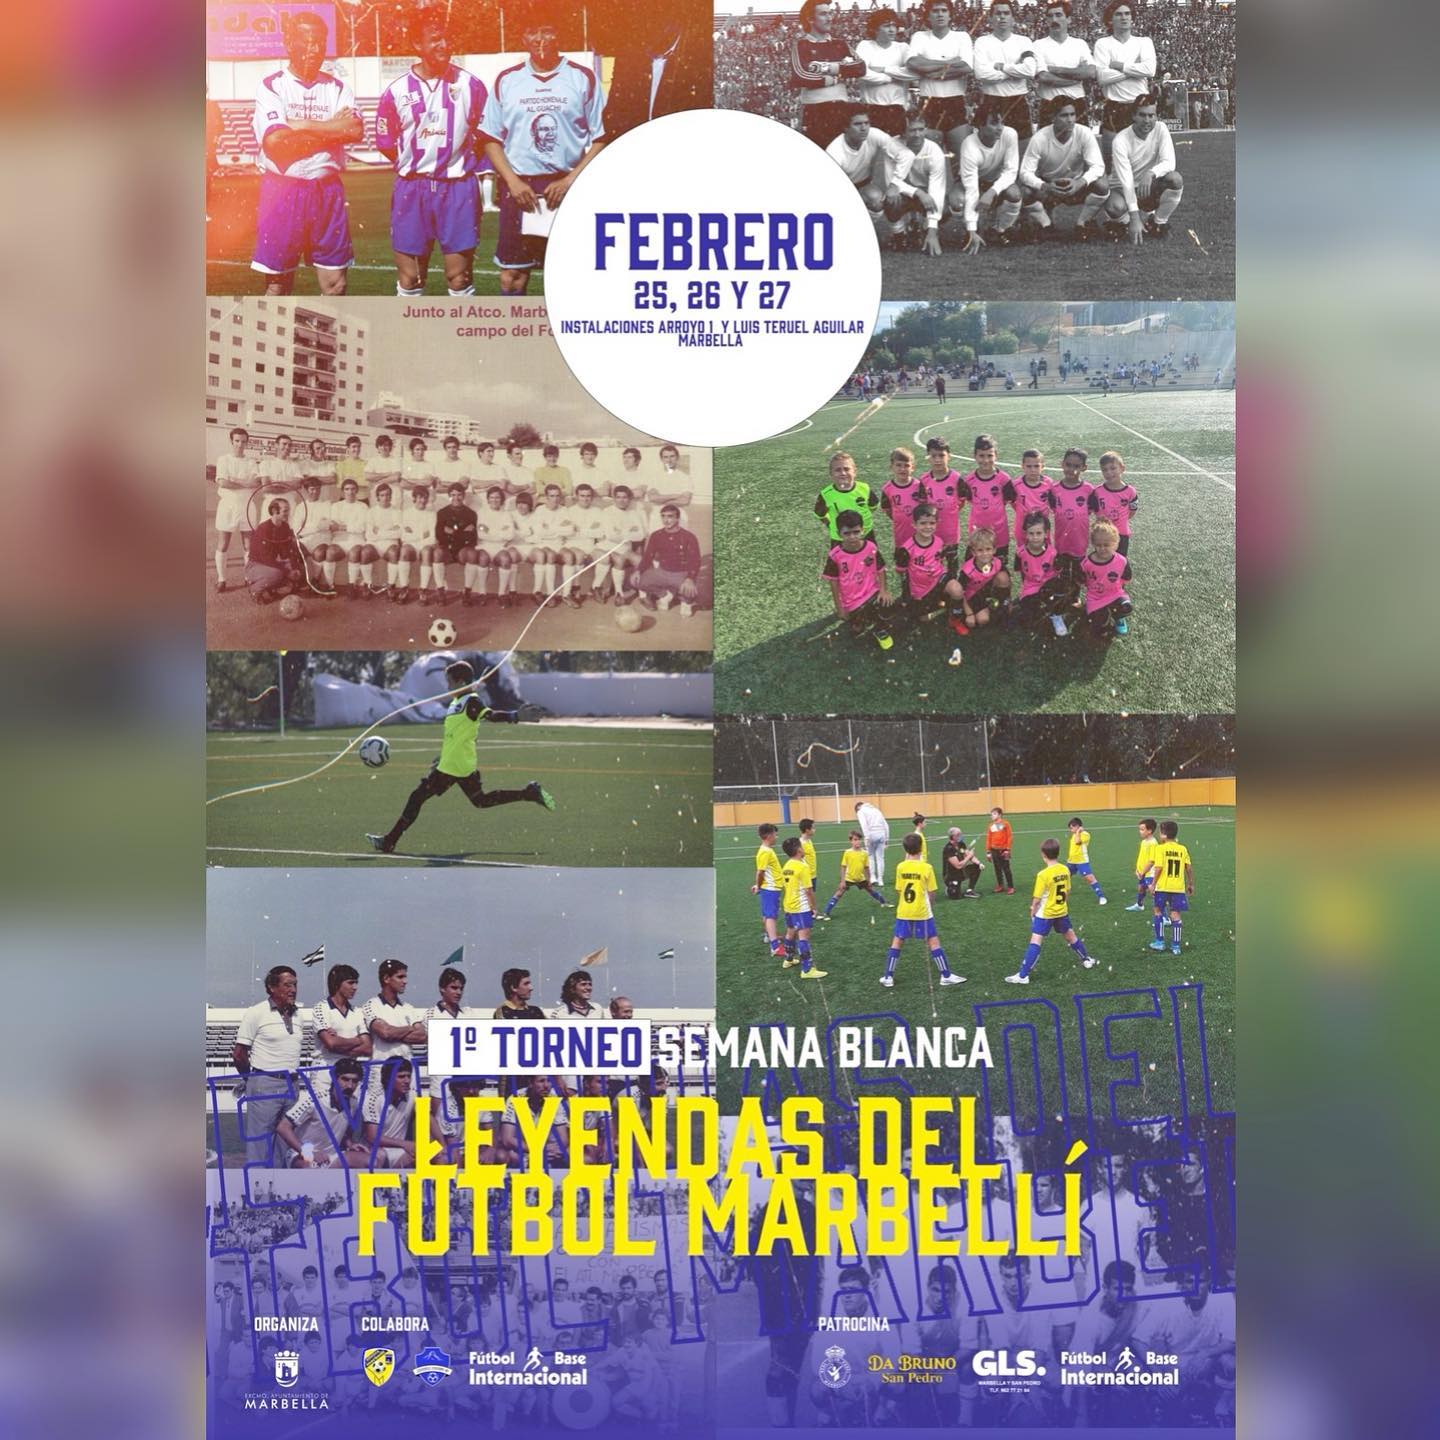 El I Torneo ‘Leyendas del Fútbol Marbellí’ reunirá del 25 al 27 de febrero en los campos Arroyo Primero y Luis Teruel a 90 equipos locales y provinciales